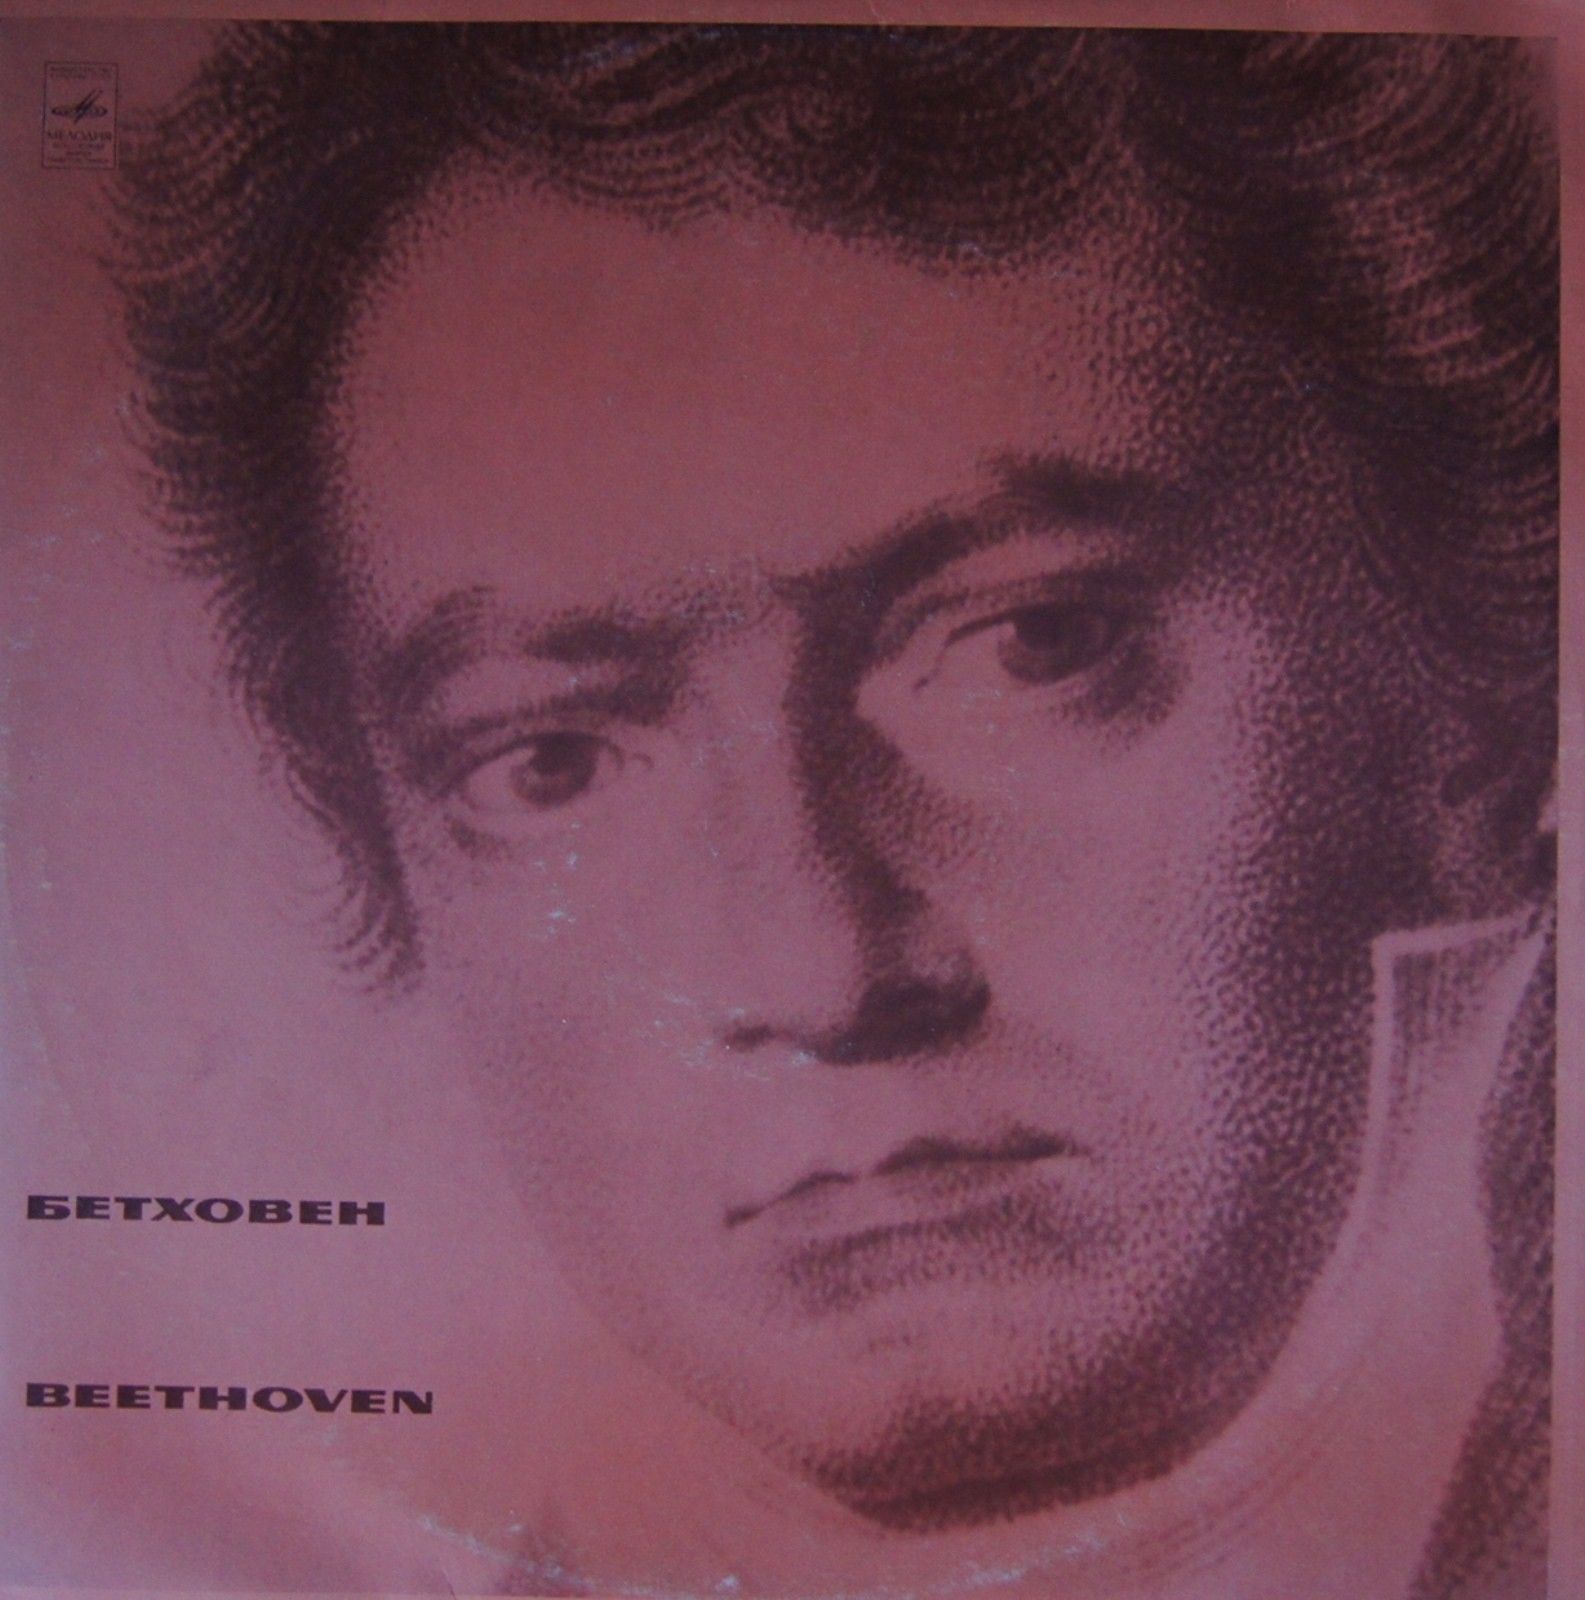 Л. Бетховен: Соната № 9 ля мажор, соч. 47 "Крейцерова" (Д. Ойстрах, Л. Оборин). Пластинка 5 из 6